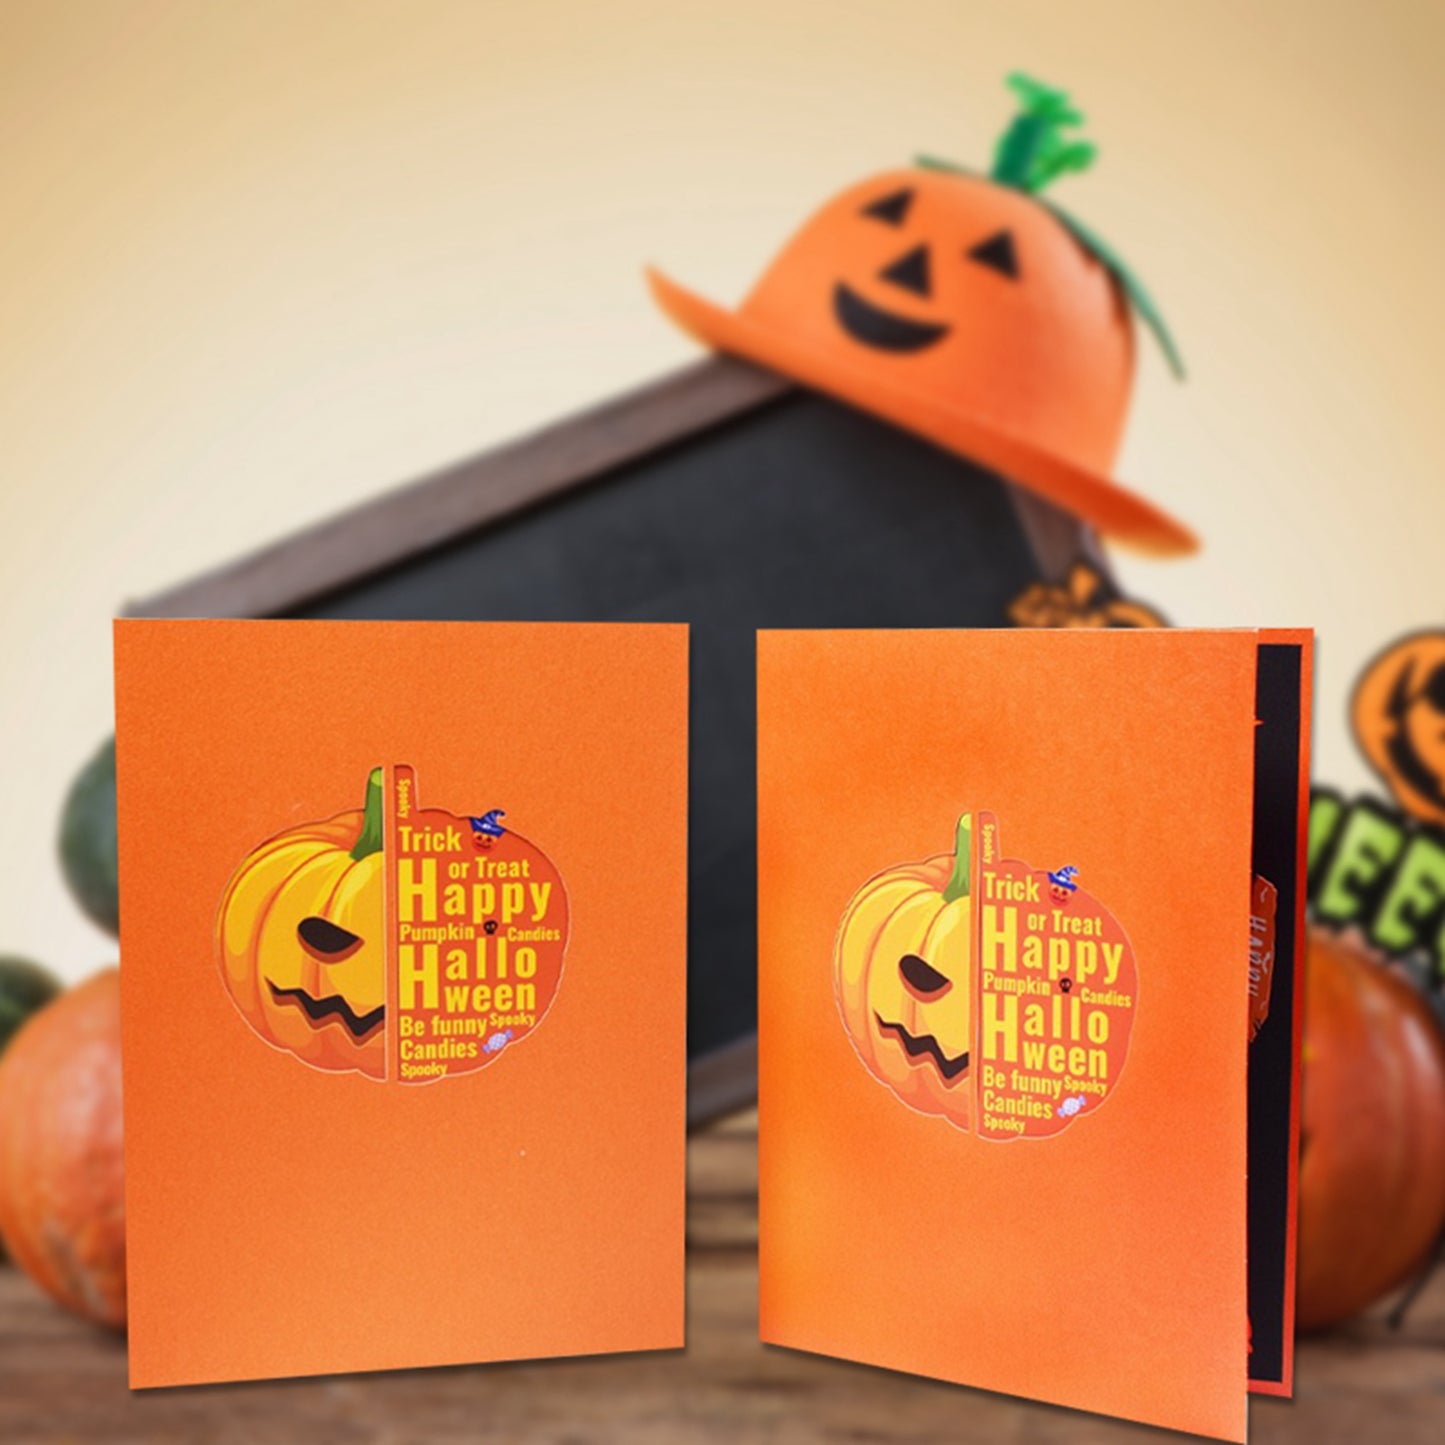 3D Pop-up Halloween Card Funny Pumpkin Cart Postcard